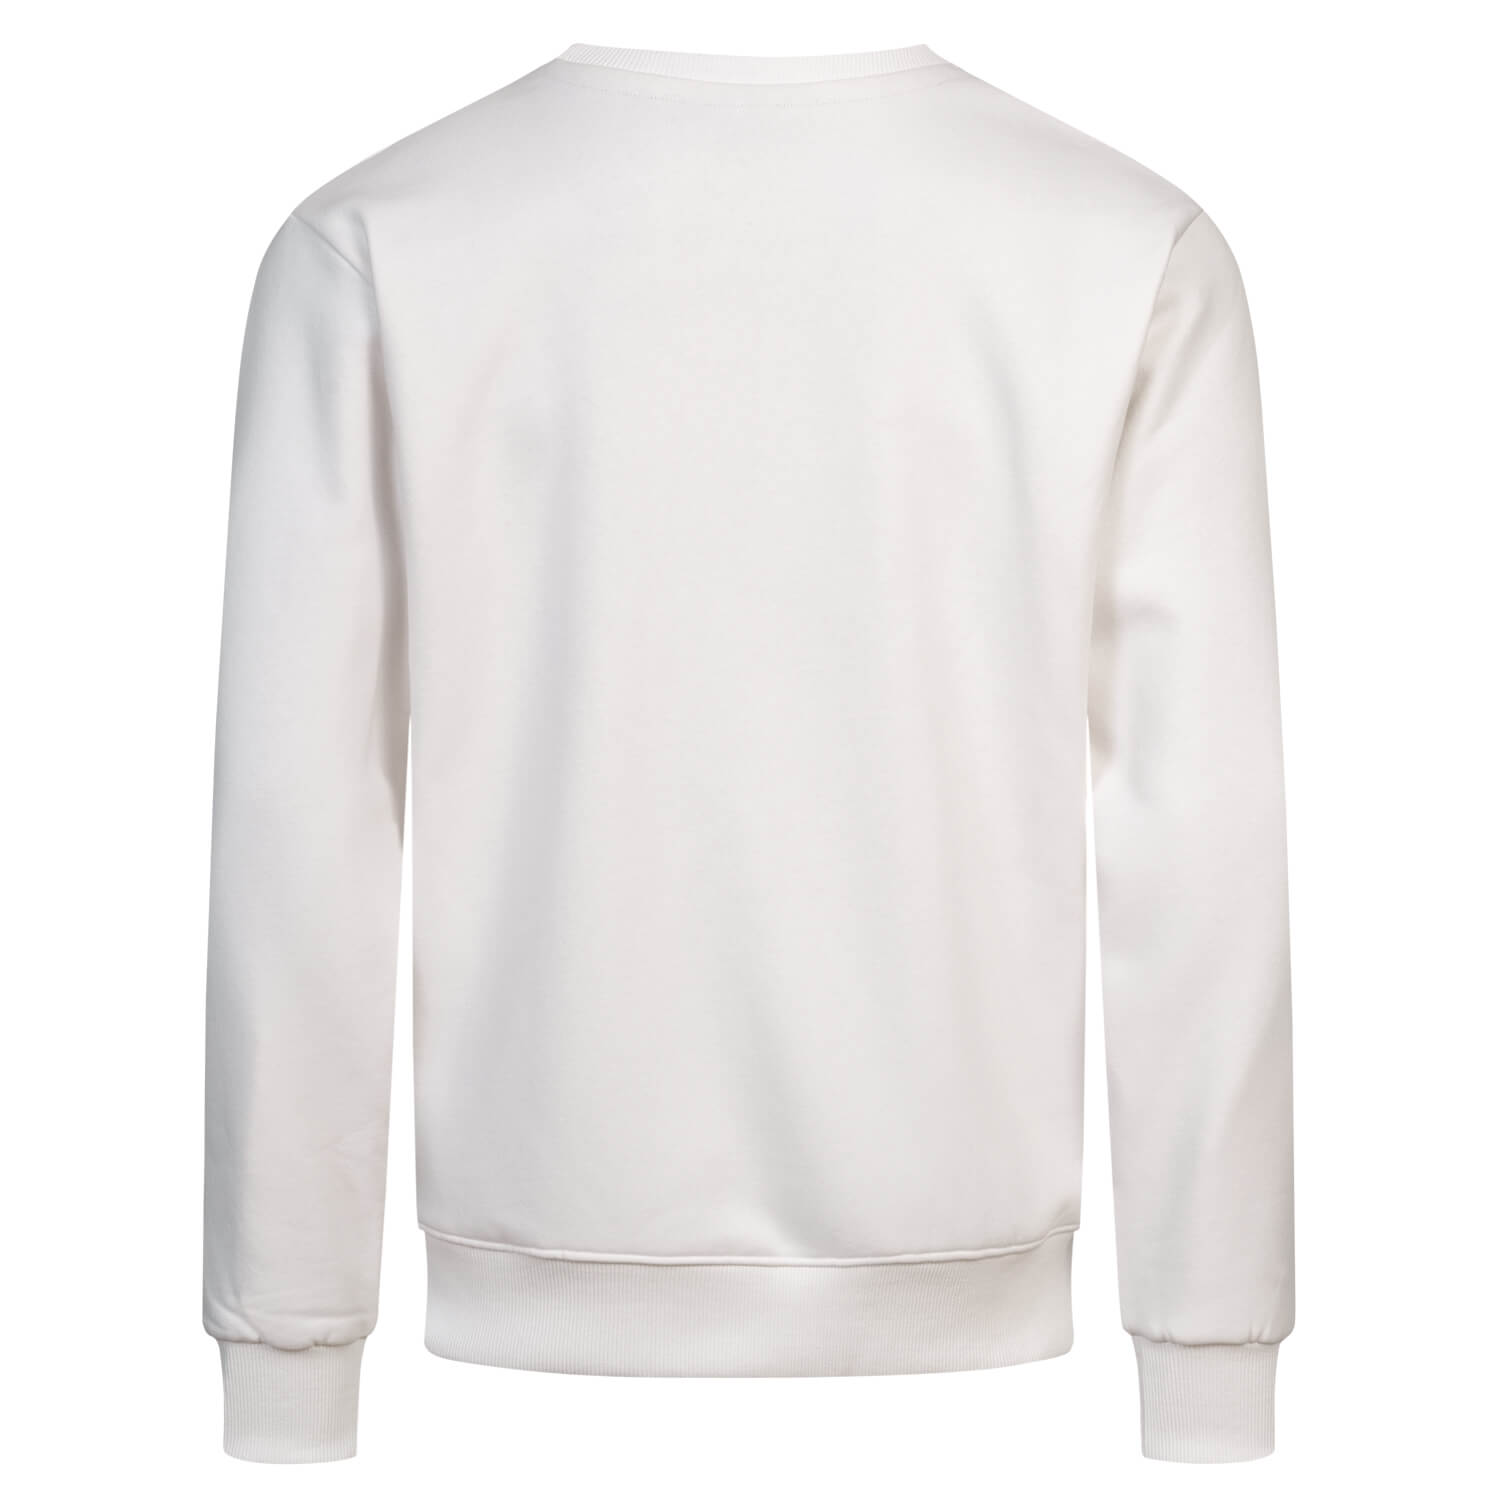 Bild 2: Sweater White Badge